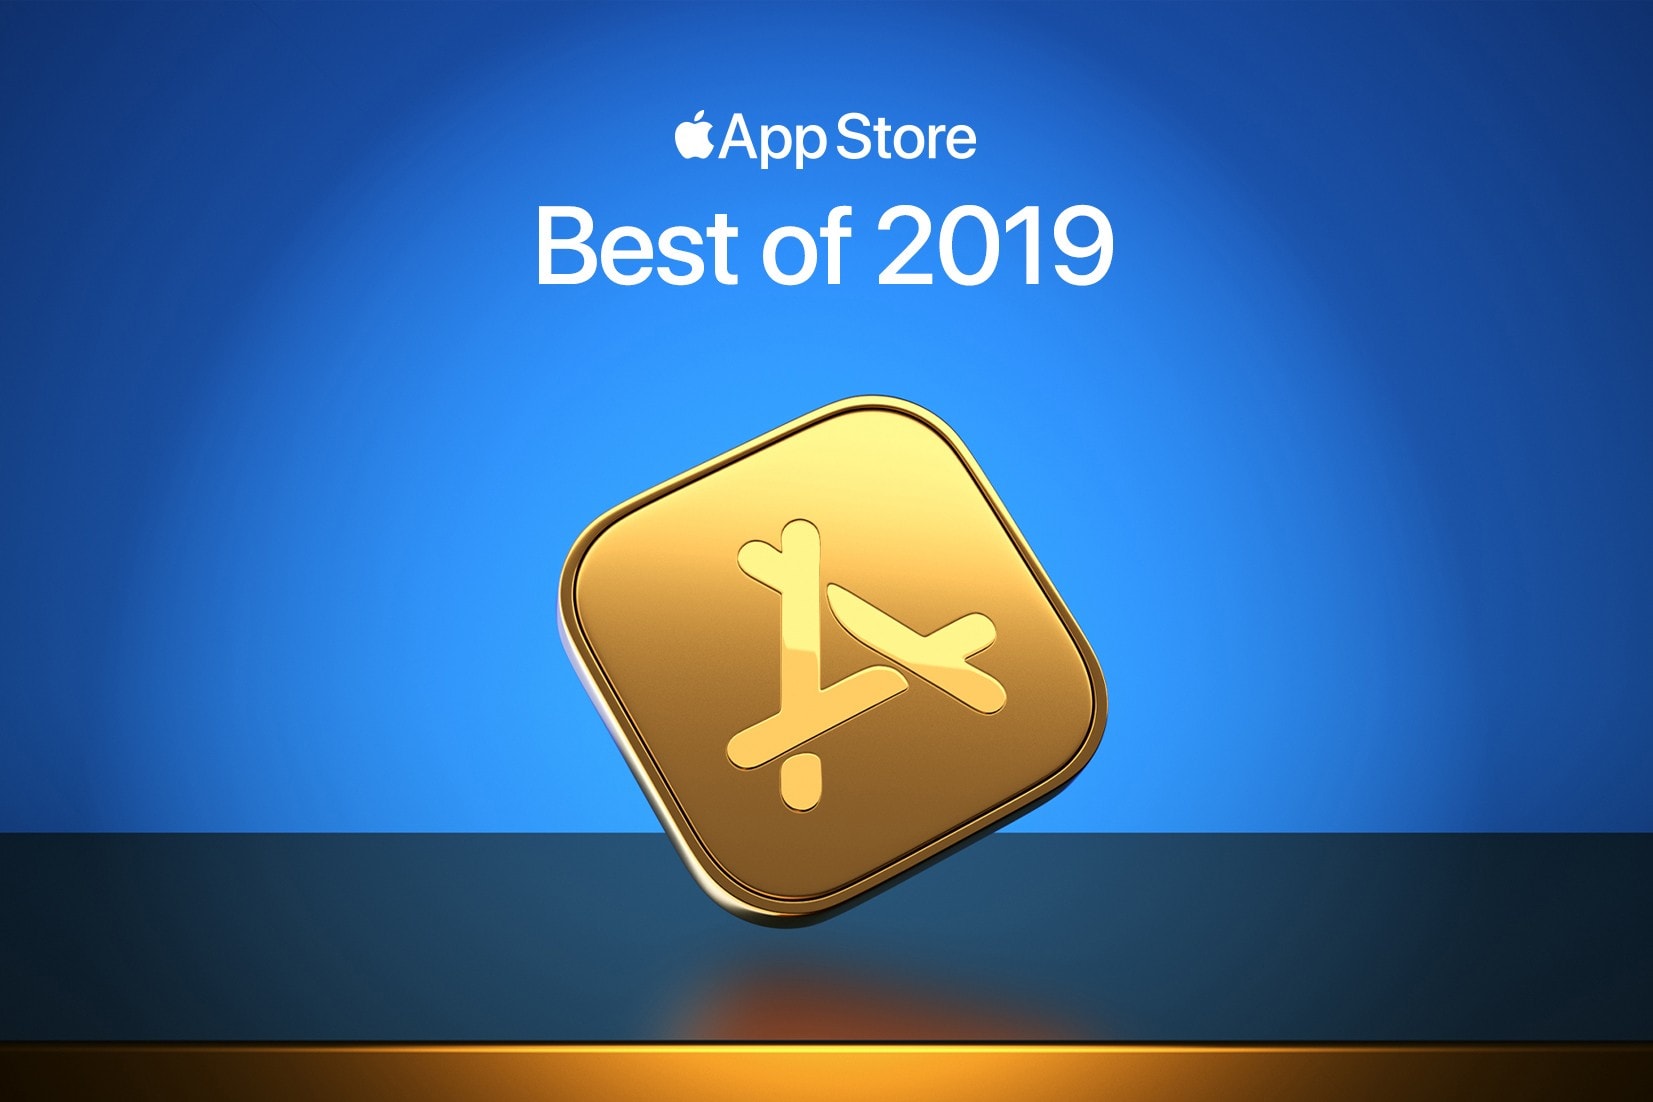 Apple アップル Best ベスト Apps アプリ and Games ゲーム 2019 App Store アップルストア Apple Arcade アーケード 最優秀 ランキング iphone mac アイフォーン マック